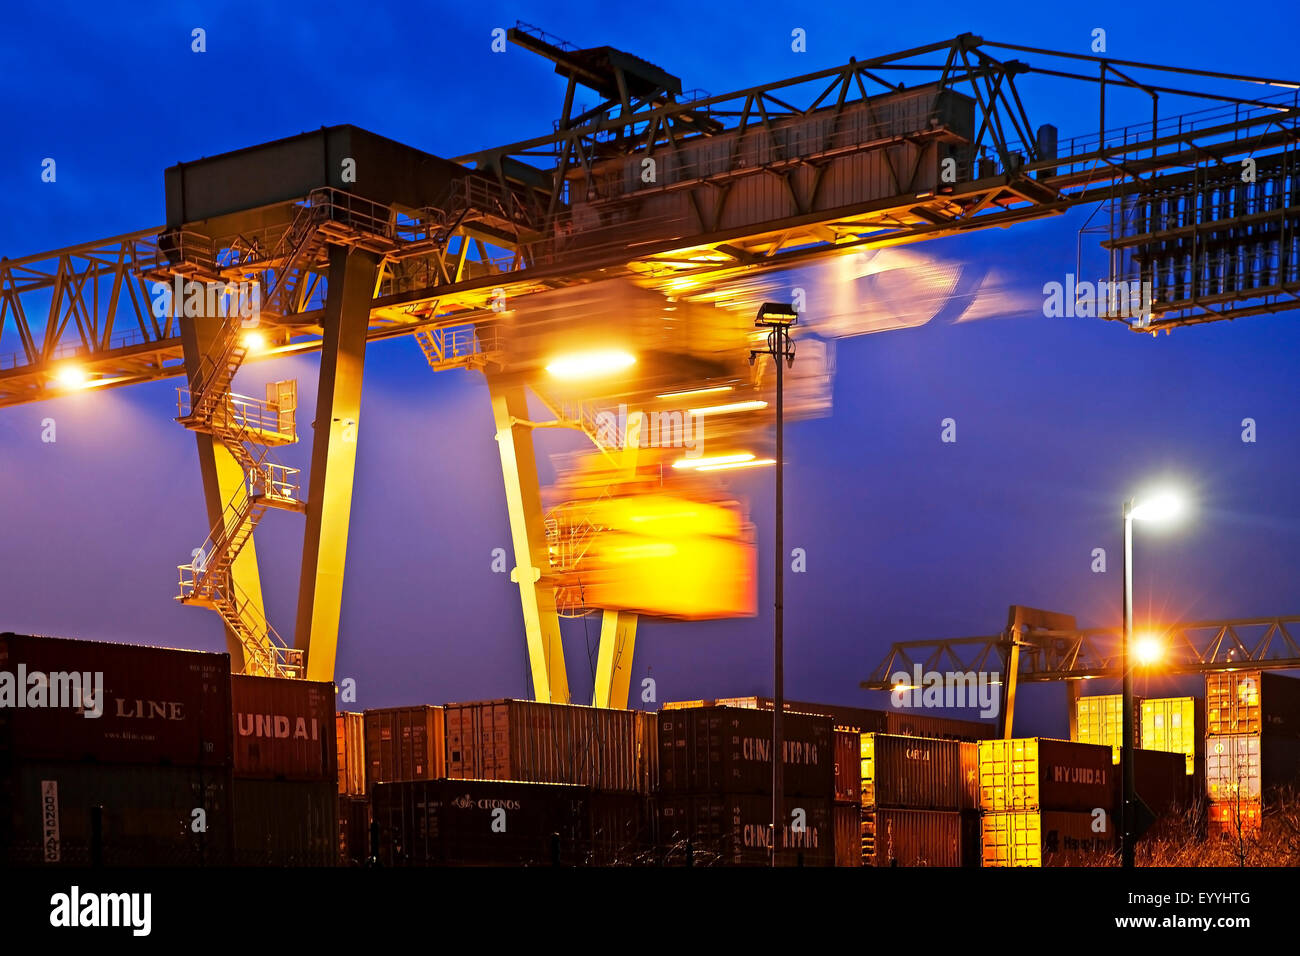 Dortmunder Hafen mit Container-Portalkran am Abend, Dortmund, Ruhrgebiet, Nordrhein-Westfalen, Deutschland Stockfoto